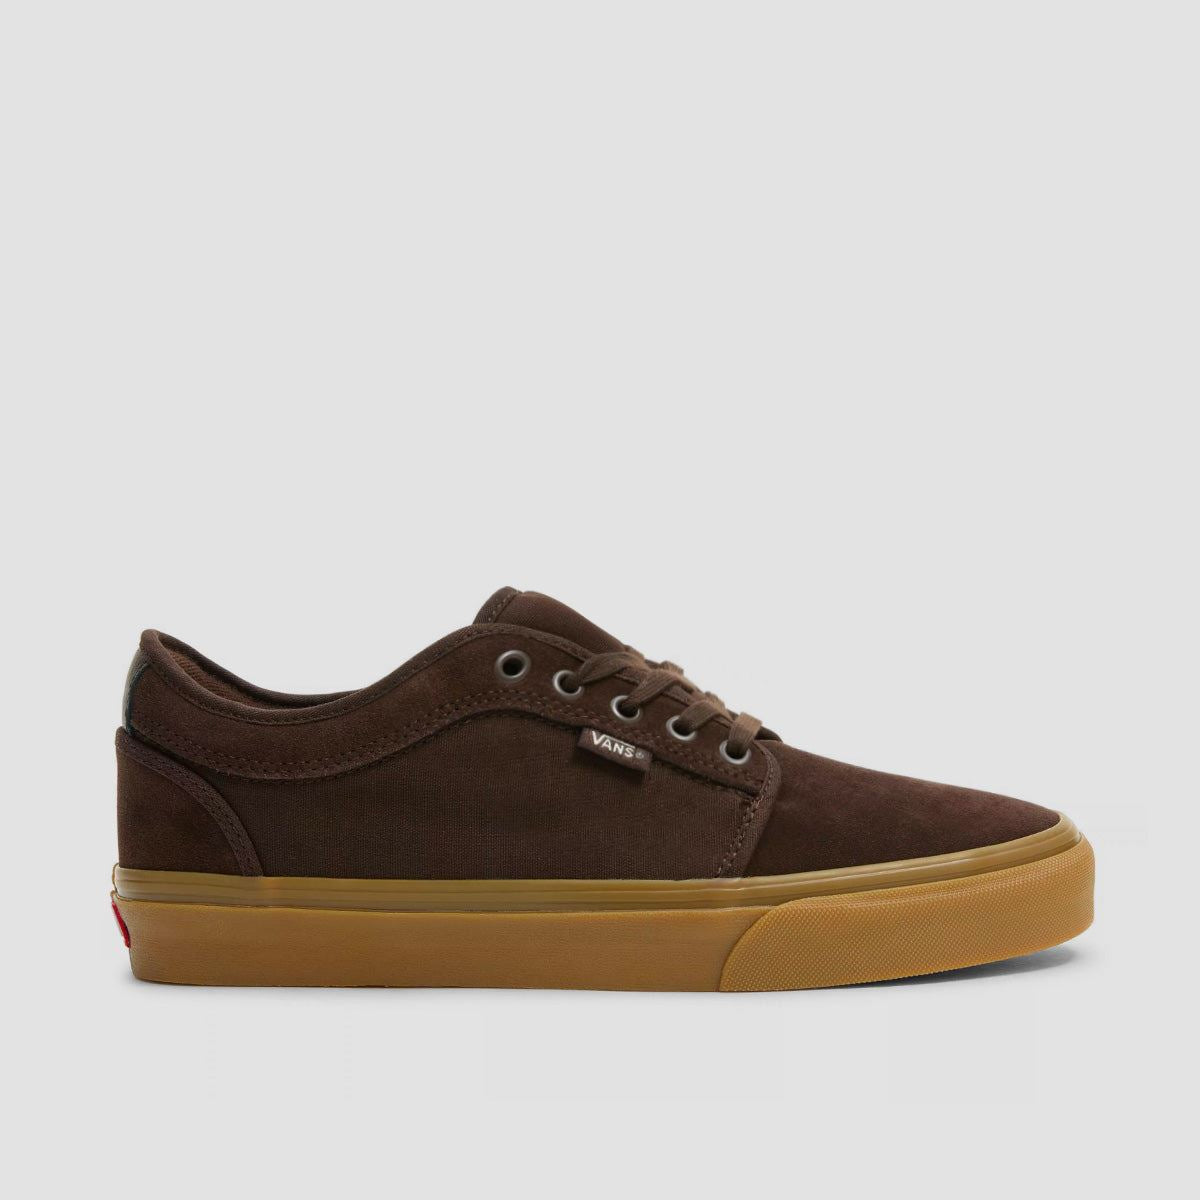 Vans Skate Chukka Low Shoes - Dark Brown/Gum